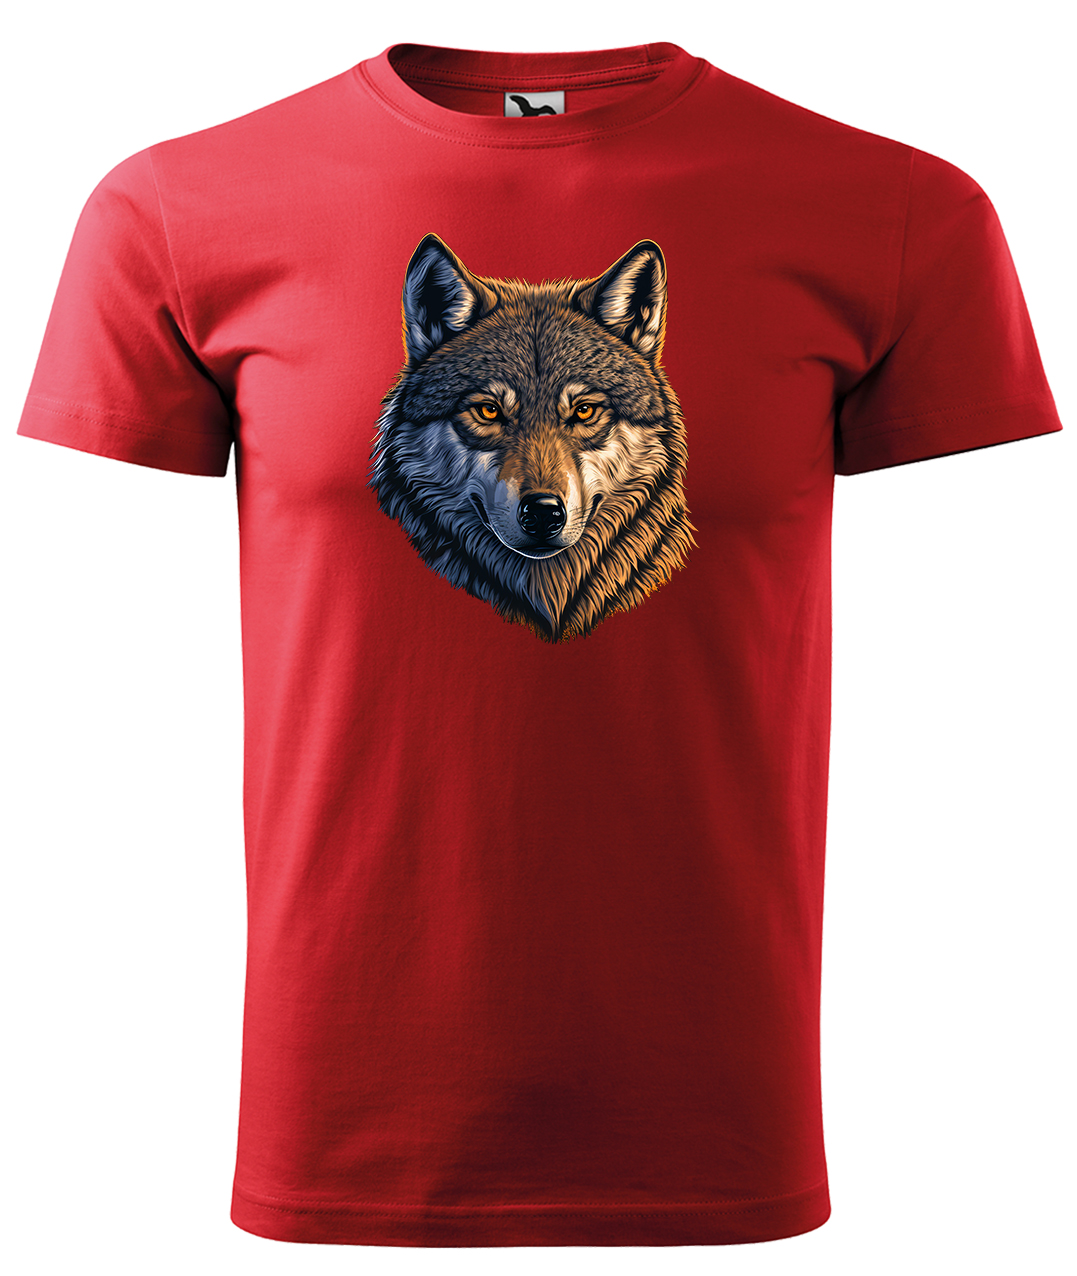 Dětské tričko s vlkem - Hlava vlka Velikost: 6 let / 122 cm, Barva: Červená (07), Délka rukávu: Krátký rukáv